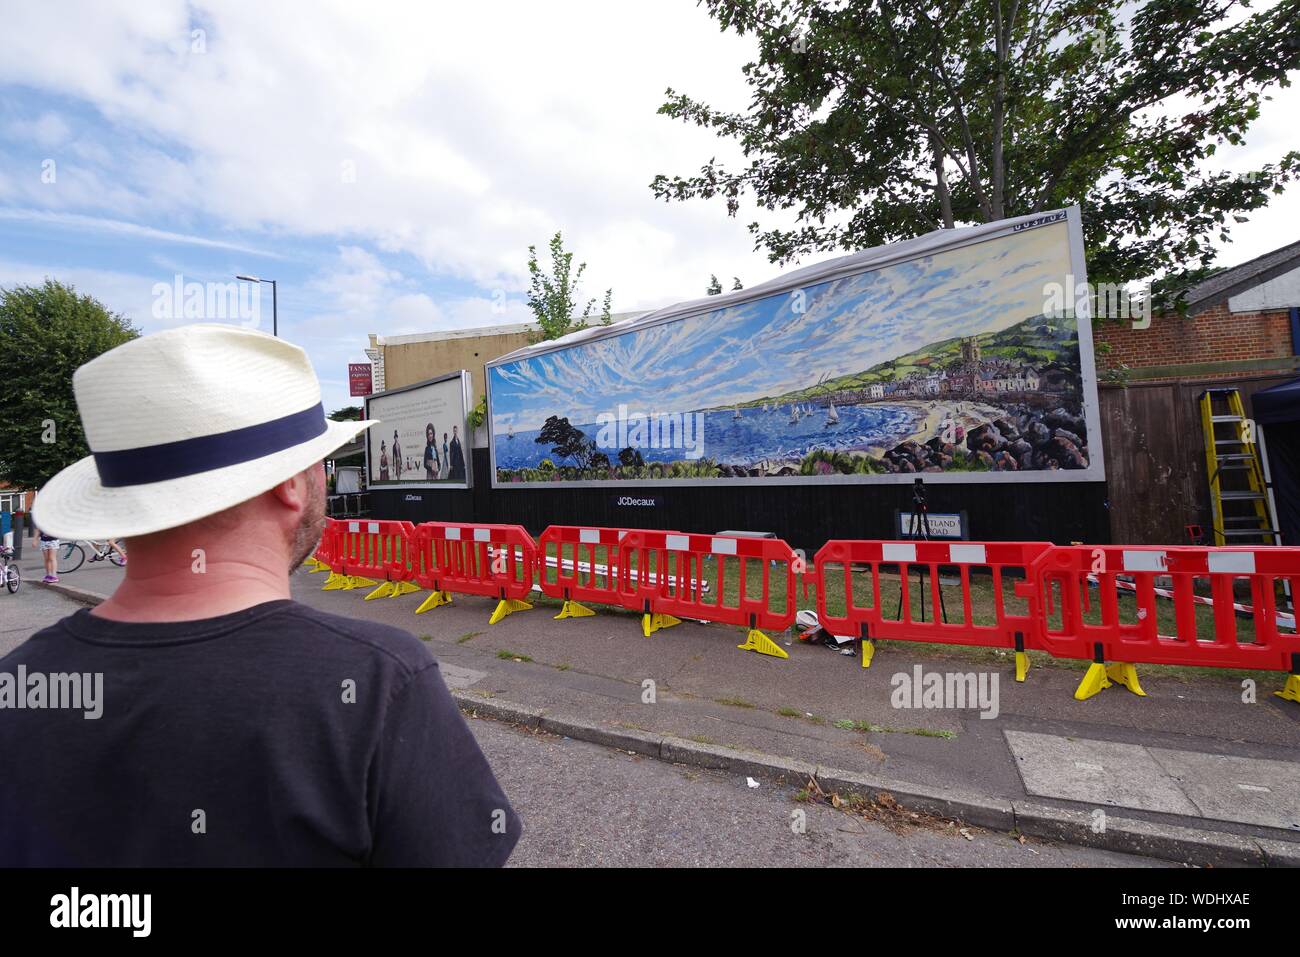 Artista britannico David Downes è stata commissionata da ITV per creare un grande murale pubblica in Bournemouth in concomitanza con il lancio del loro dramma 2019 Sanditon in agosto 2019. Pittura pubblicamente per 5 giorni, e qui il giorno 5, Downes è ricreare una versione illustrata del poster artwork per Sanditon, su un enorme cartellone nel Regno Unito la città costiera, per riflettere la posizione sul mare del dramma. L'installazione rimarrà in situ per tre settimane dopo il suo completamento. David Downes è un pittore paesaggista che amplifica il senso di luogo e di tempo attraverso la lente di autismo. Foto Stock